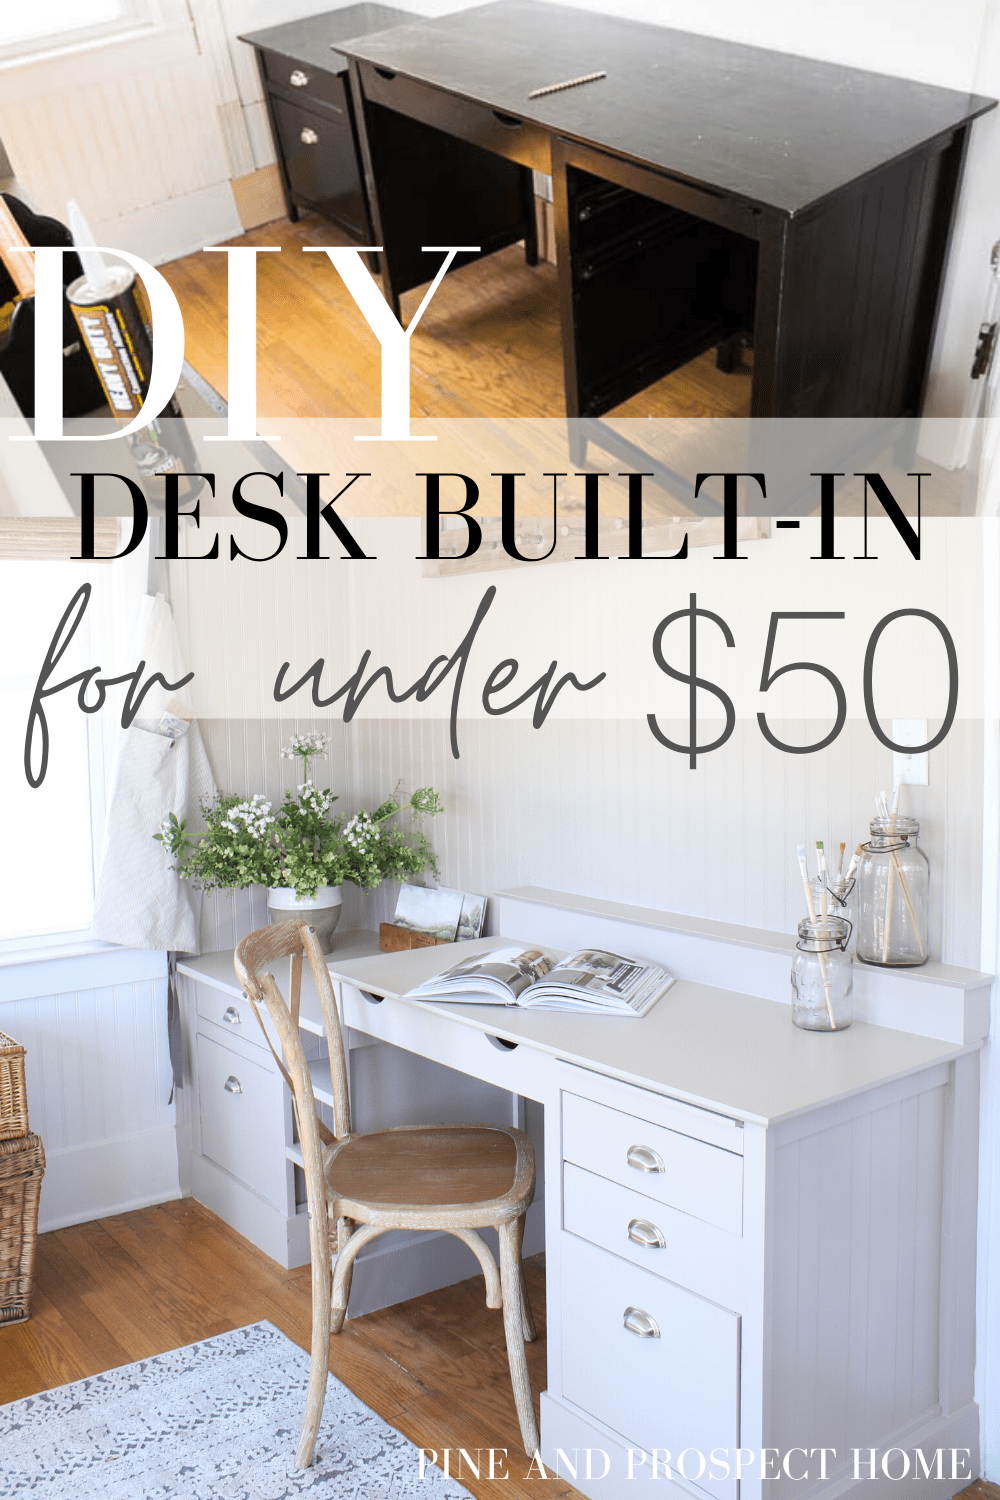 DIY Desk Built-in for Under $50 - DIY Desk Built-in for Under $50 -   19 diy desk ideas